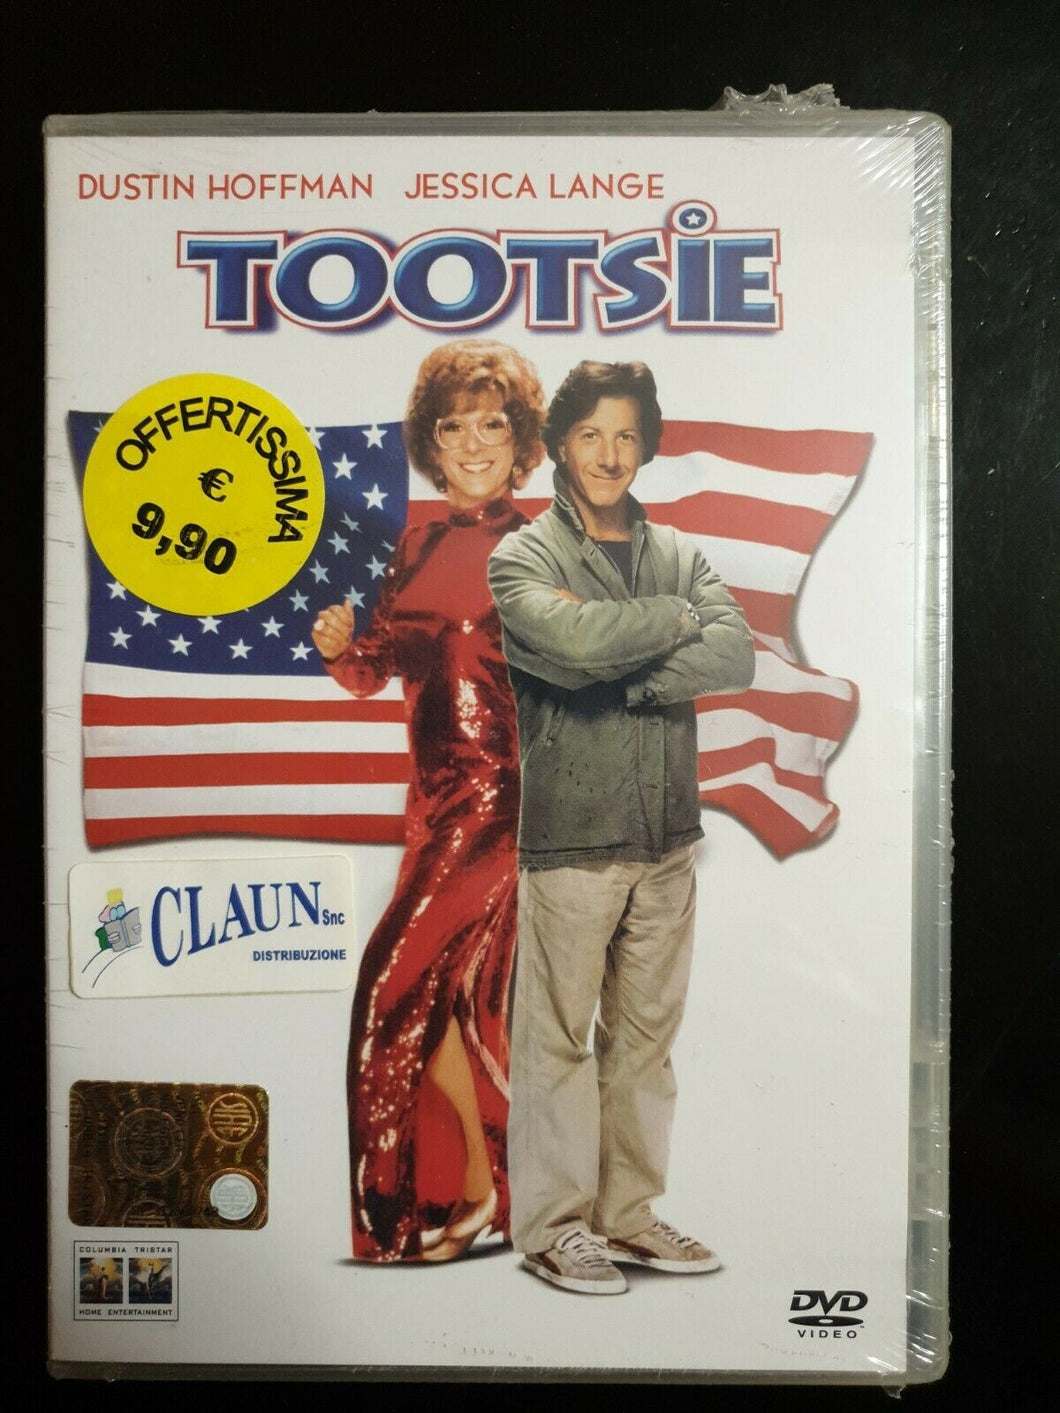 Tootsie (1982) Dustin Hoffman DVD Nuovo